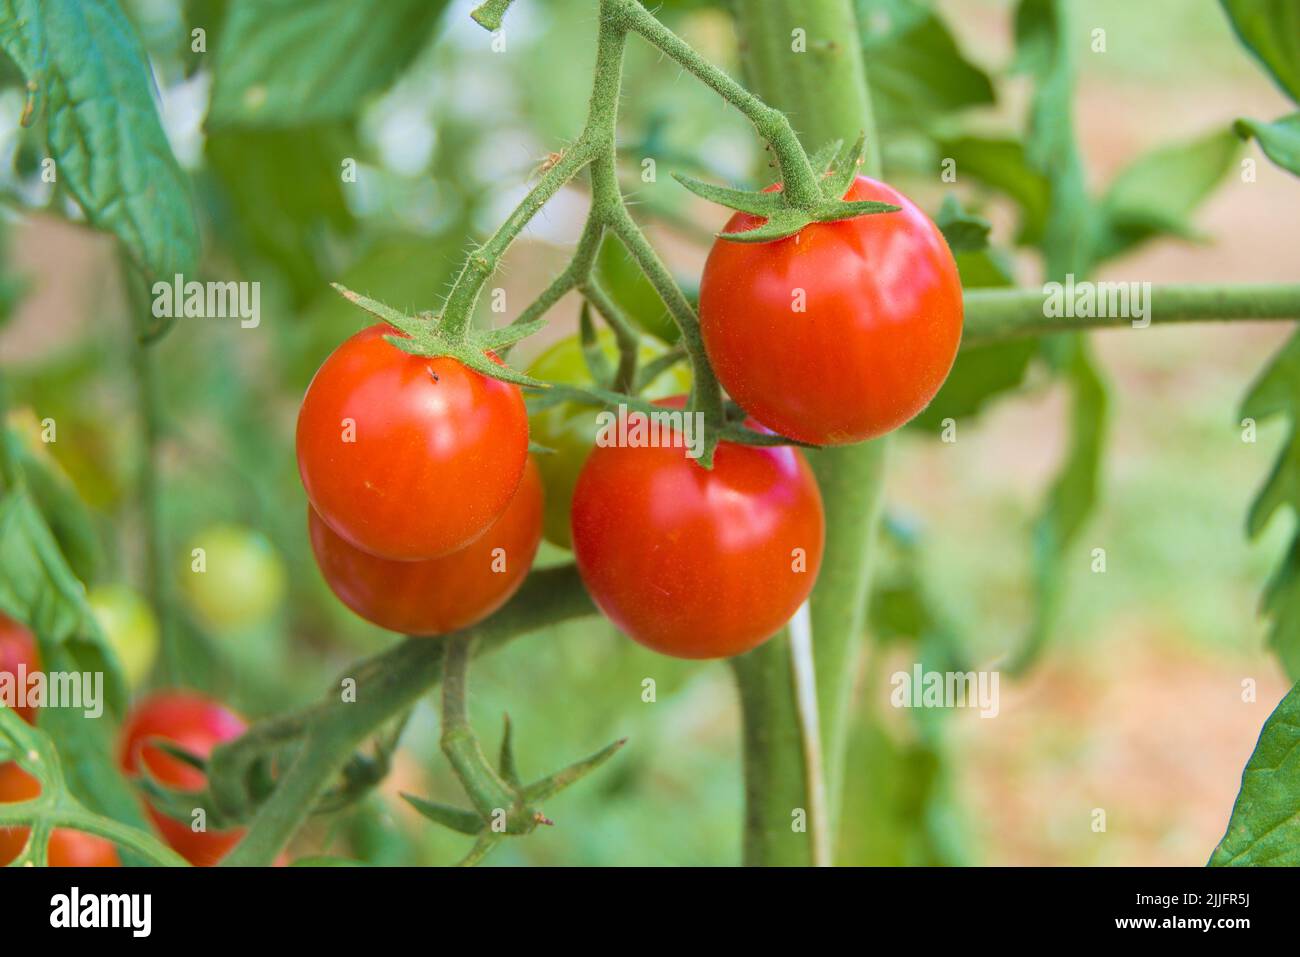 Sweet fresh fruits on a cherry tomato bush to enjoy raw Stock Photo